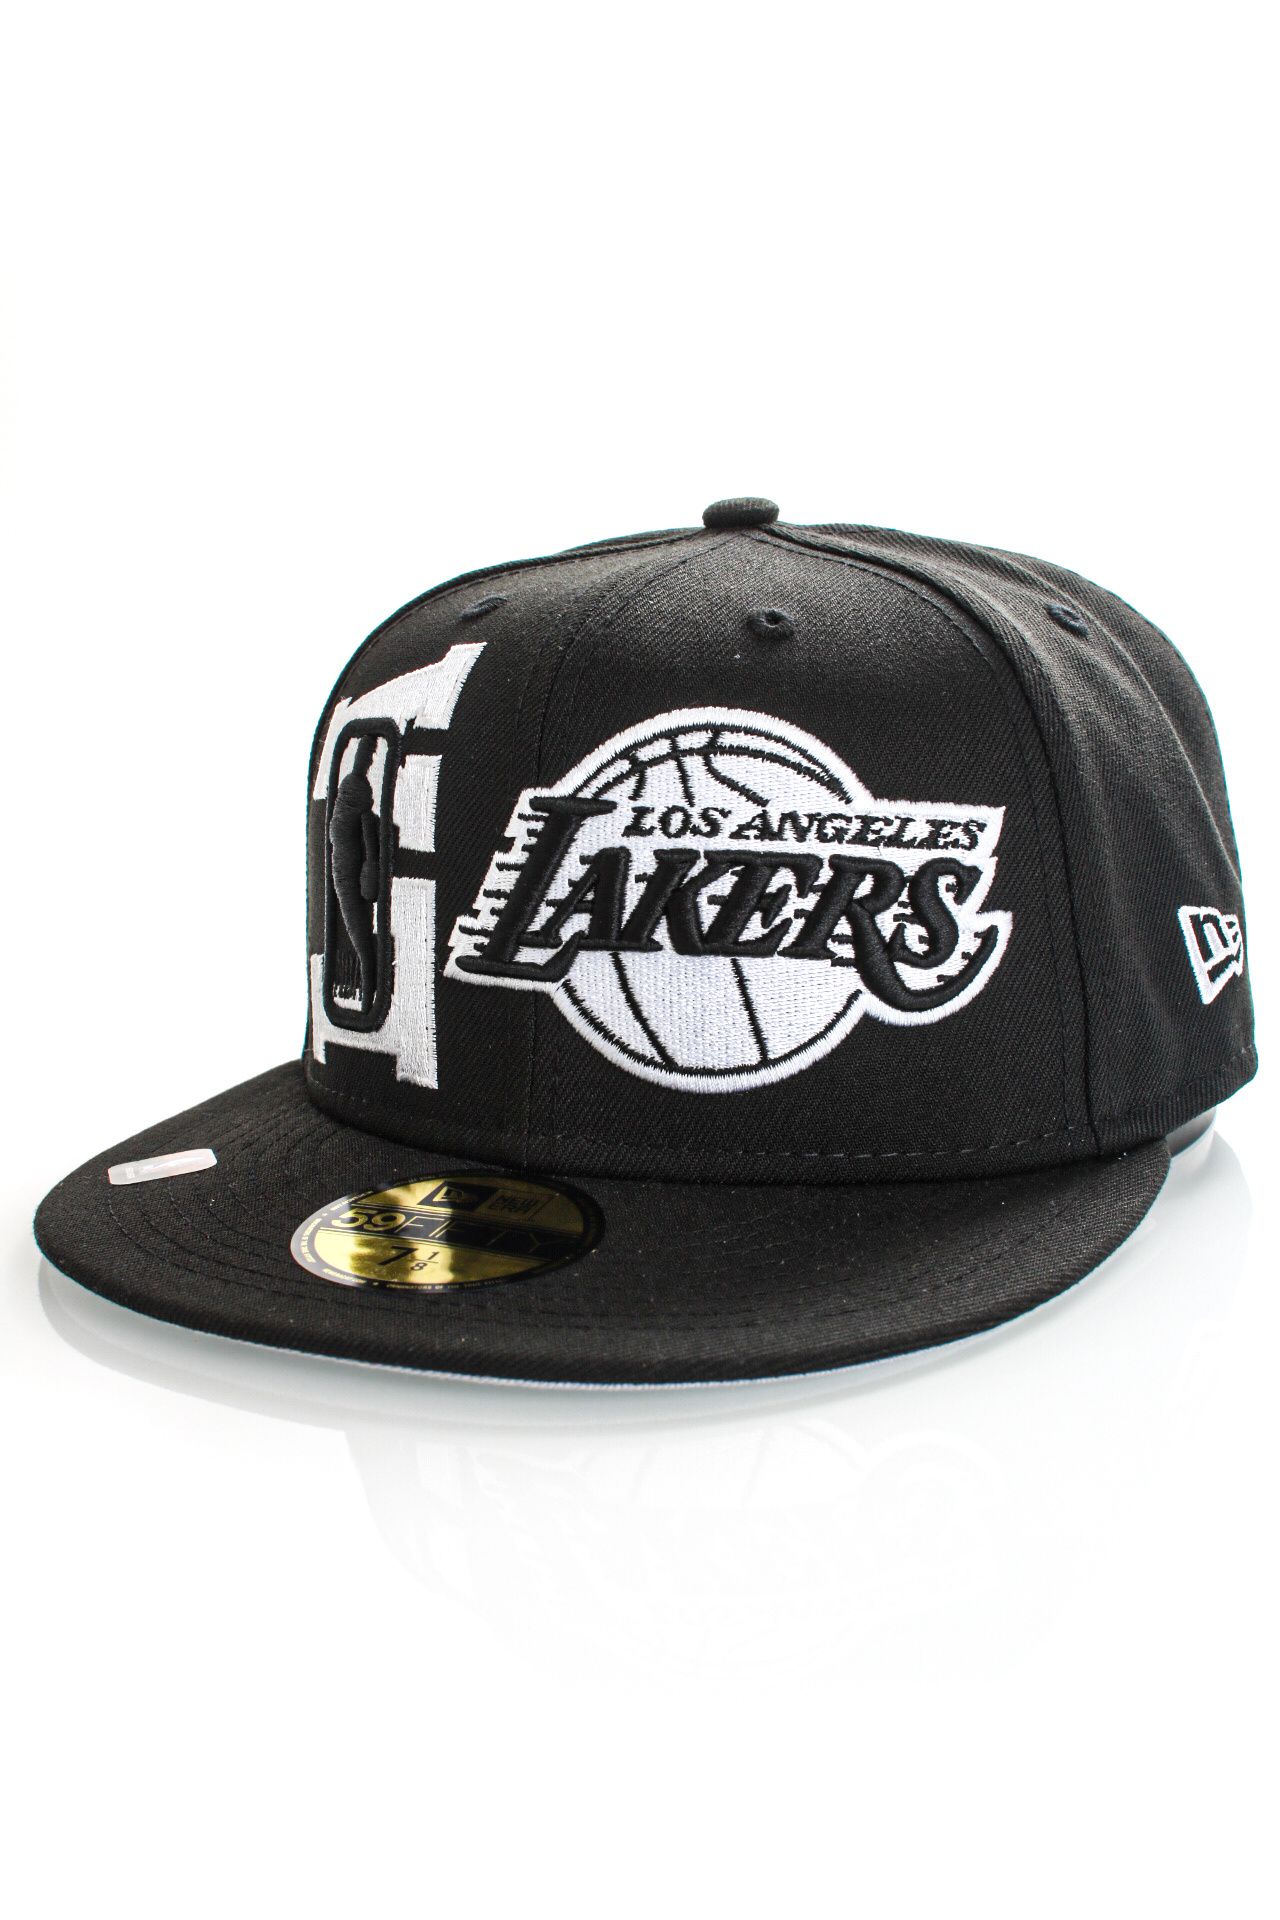 Afbeelding van New Era Fitted Cap LOS ANGELES LAKERS NBA22 DRAFT BLACK/BLACK/WHITE NE60242955